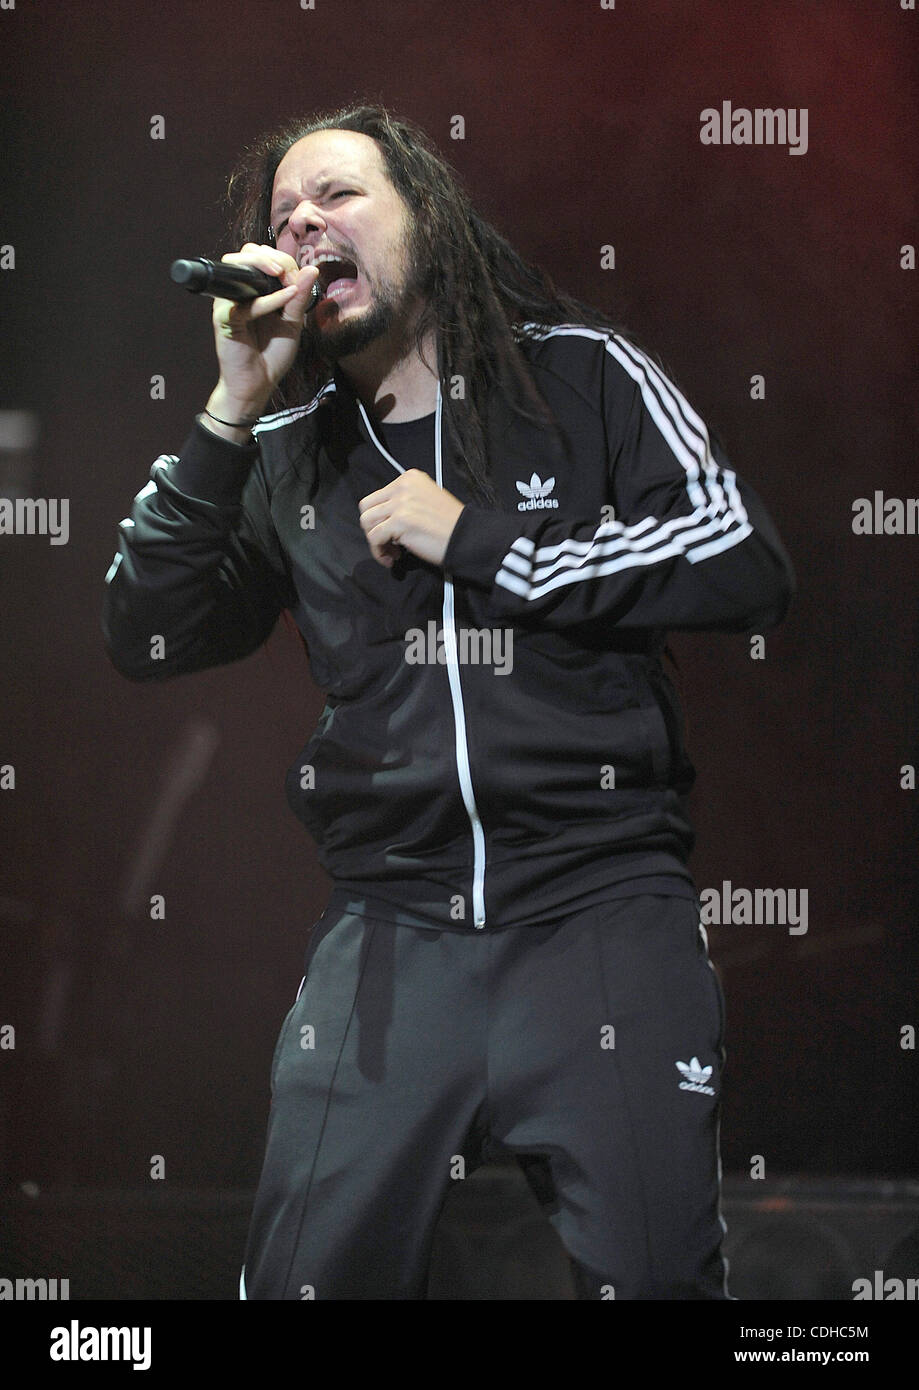 Febrero 2, 2011 - Fayetteville, Carolina del Norte, EE.UU. - El cantante Jonathan  Davis de Korn la banda realiza en vivo como parte de la música como un arma  Tour como se